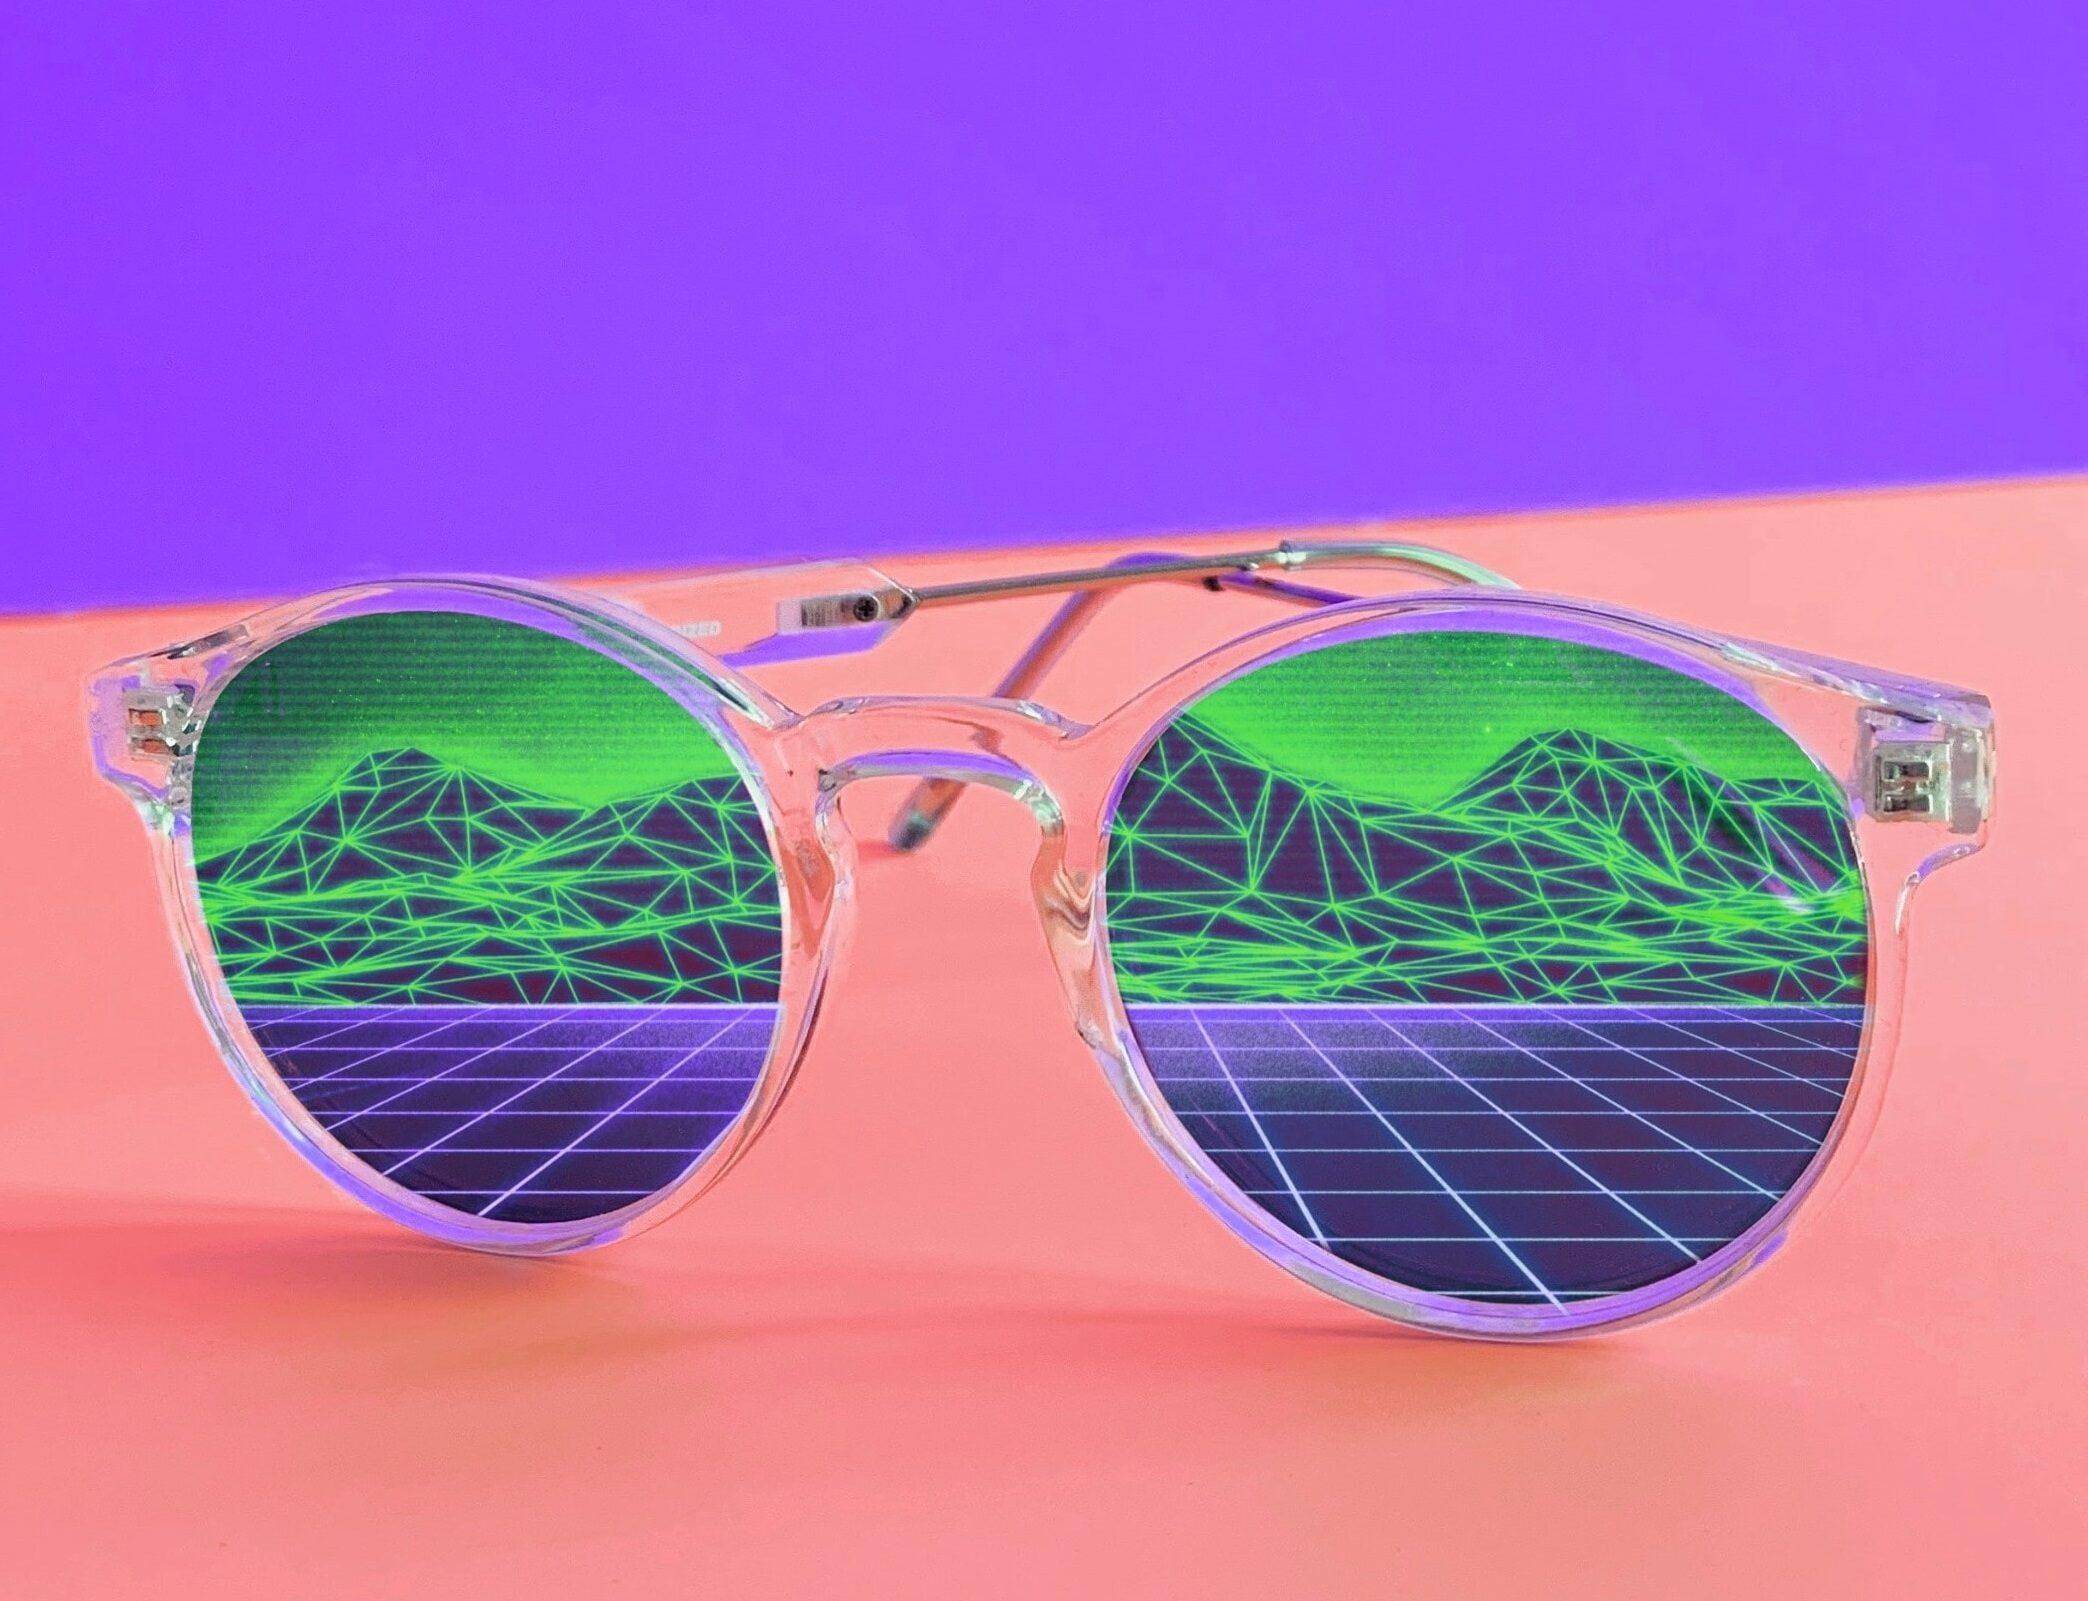 Sonnenbrille mit Spiegelung einer Landschaft, andere Welten sehen